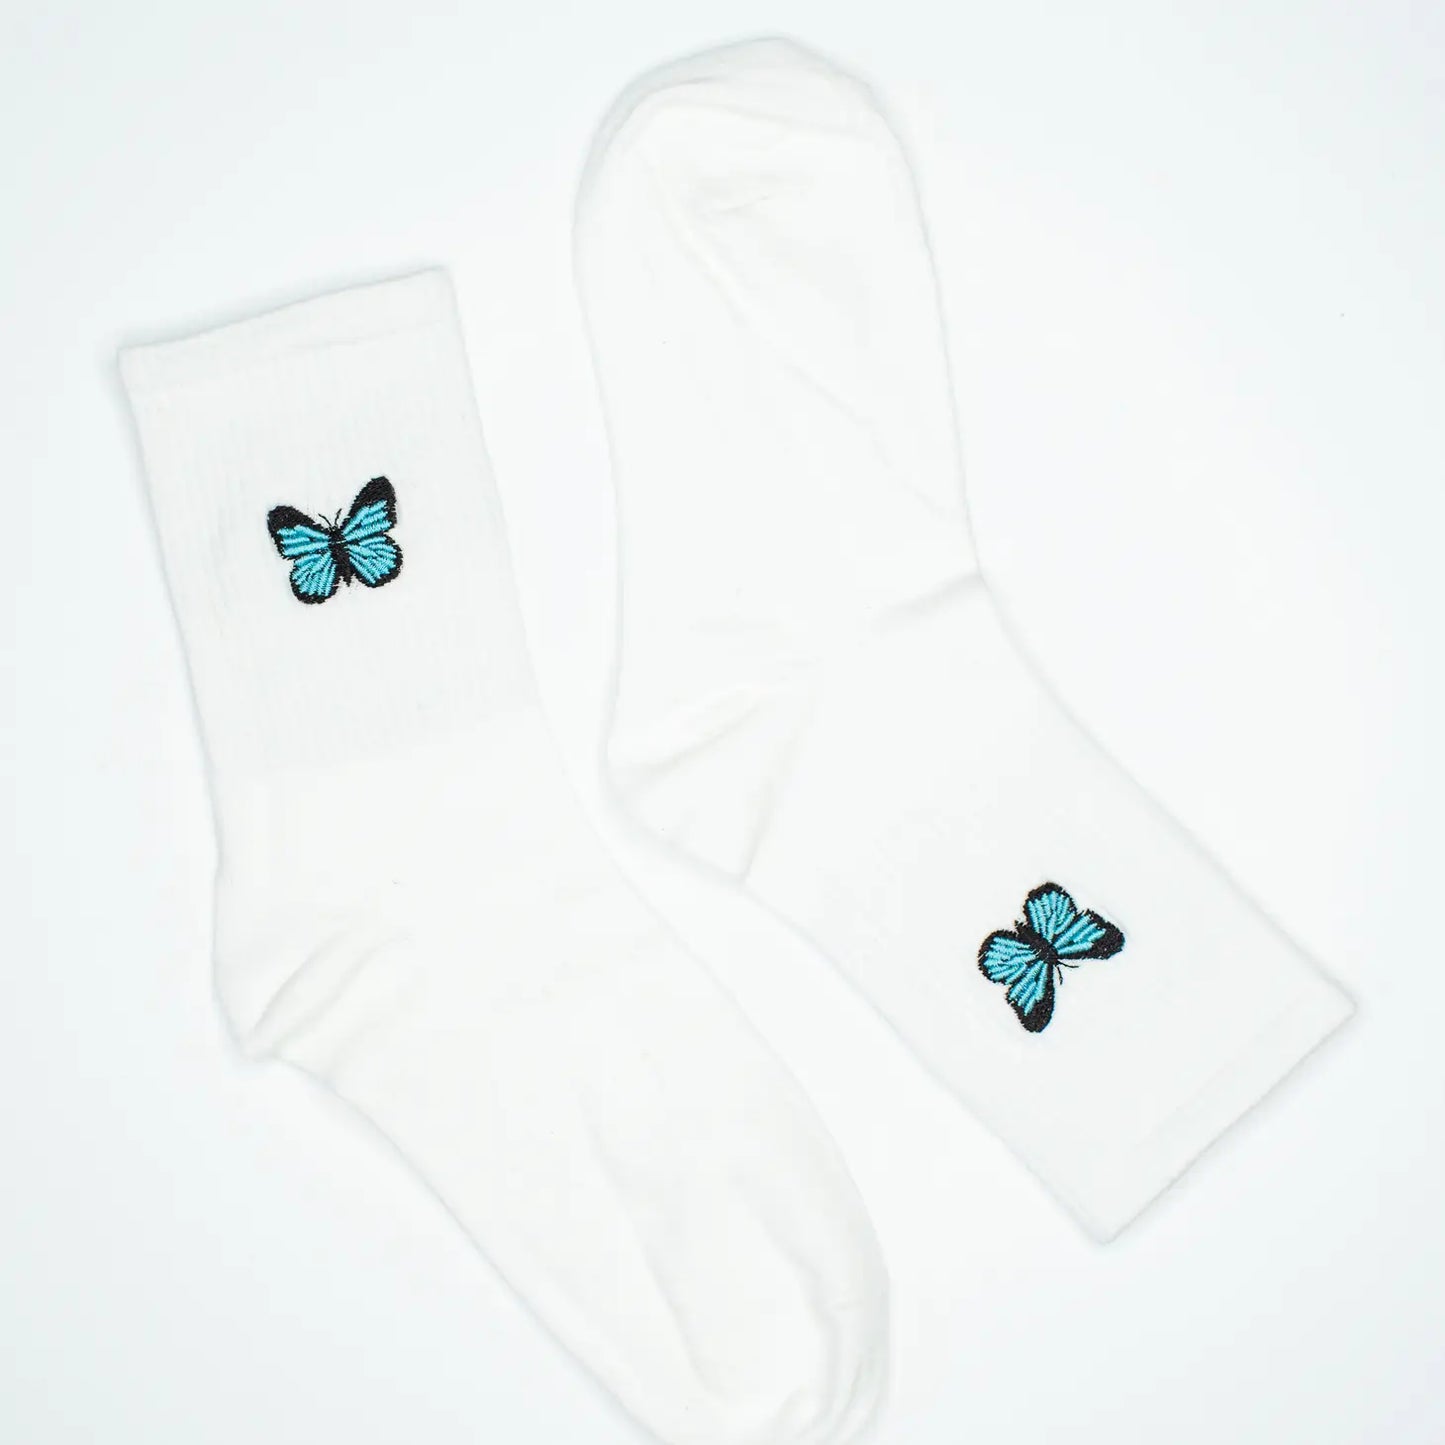 bessie blue butterfly socks